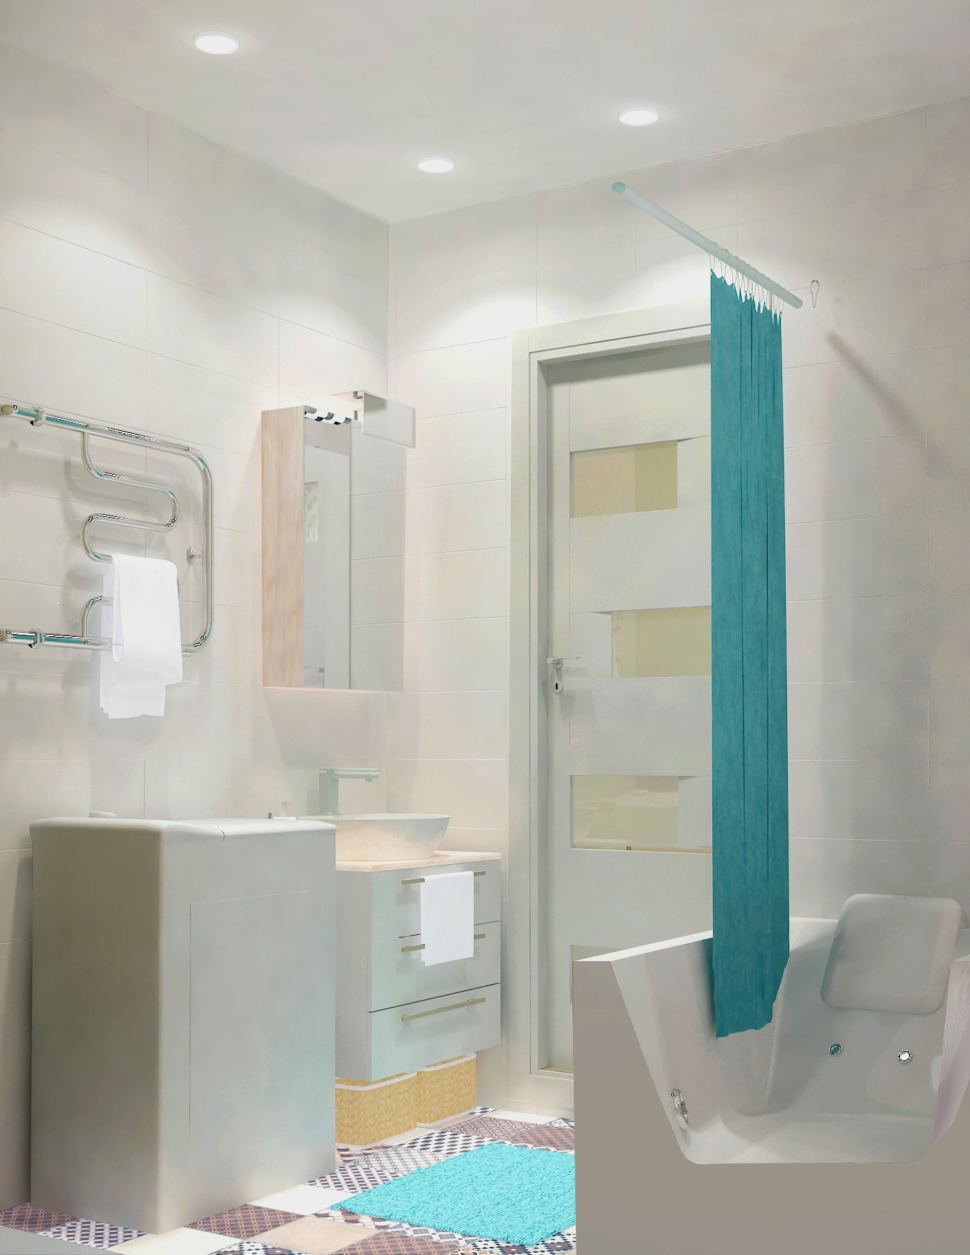 Визуализация ванной комнаты 3 кв.м. в светлых тонах, мойка, зеркальный шкаф, полотенцесушитель, стиральная машина